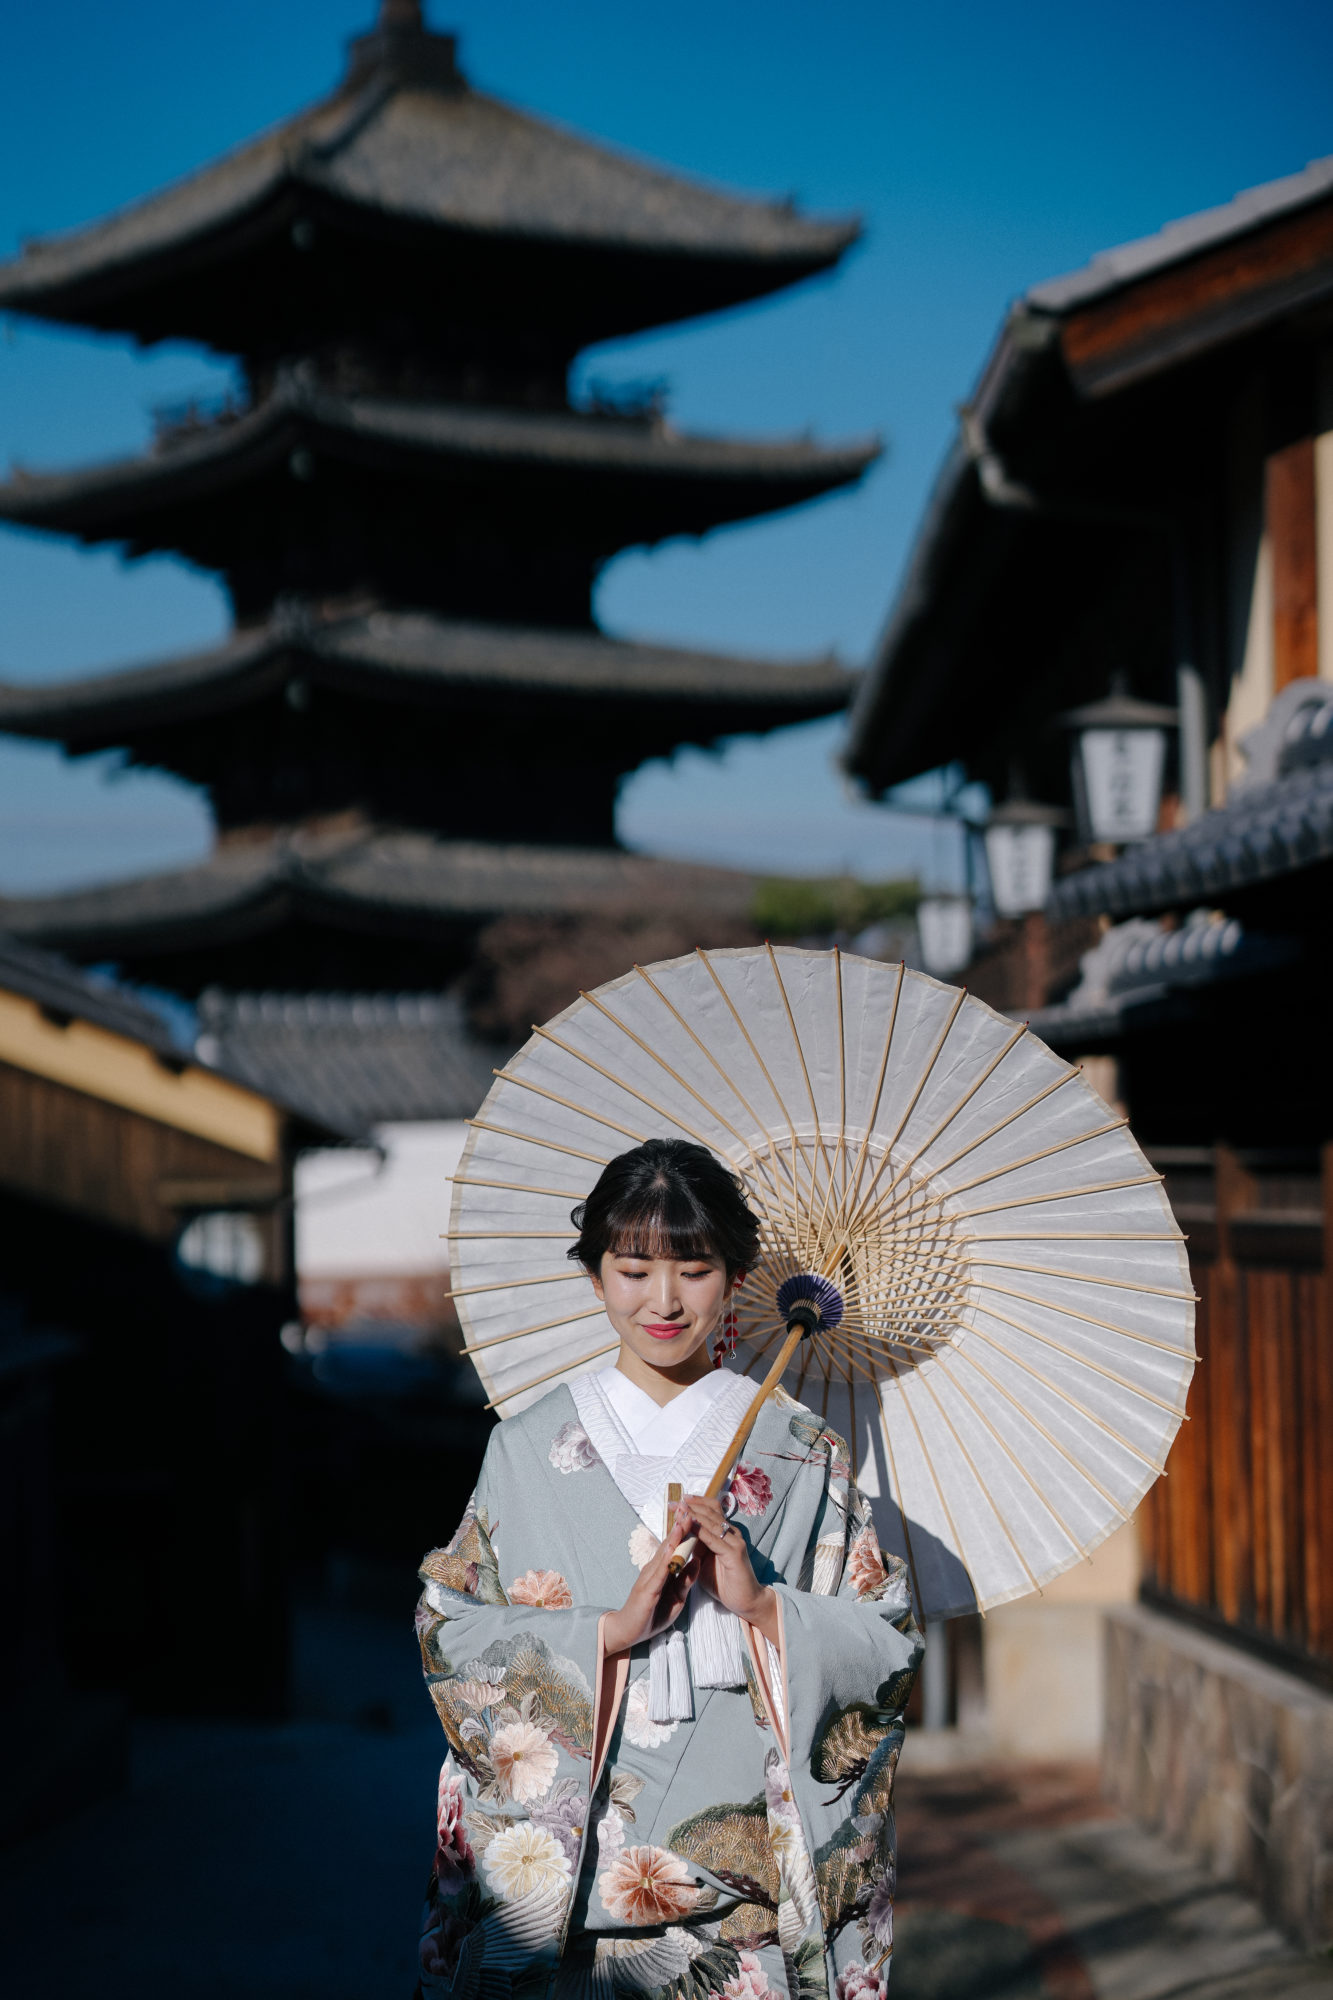 冬の大覚寺の前撮り/フォトウェディング。番傘を持つ新婦様。